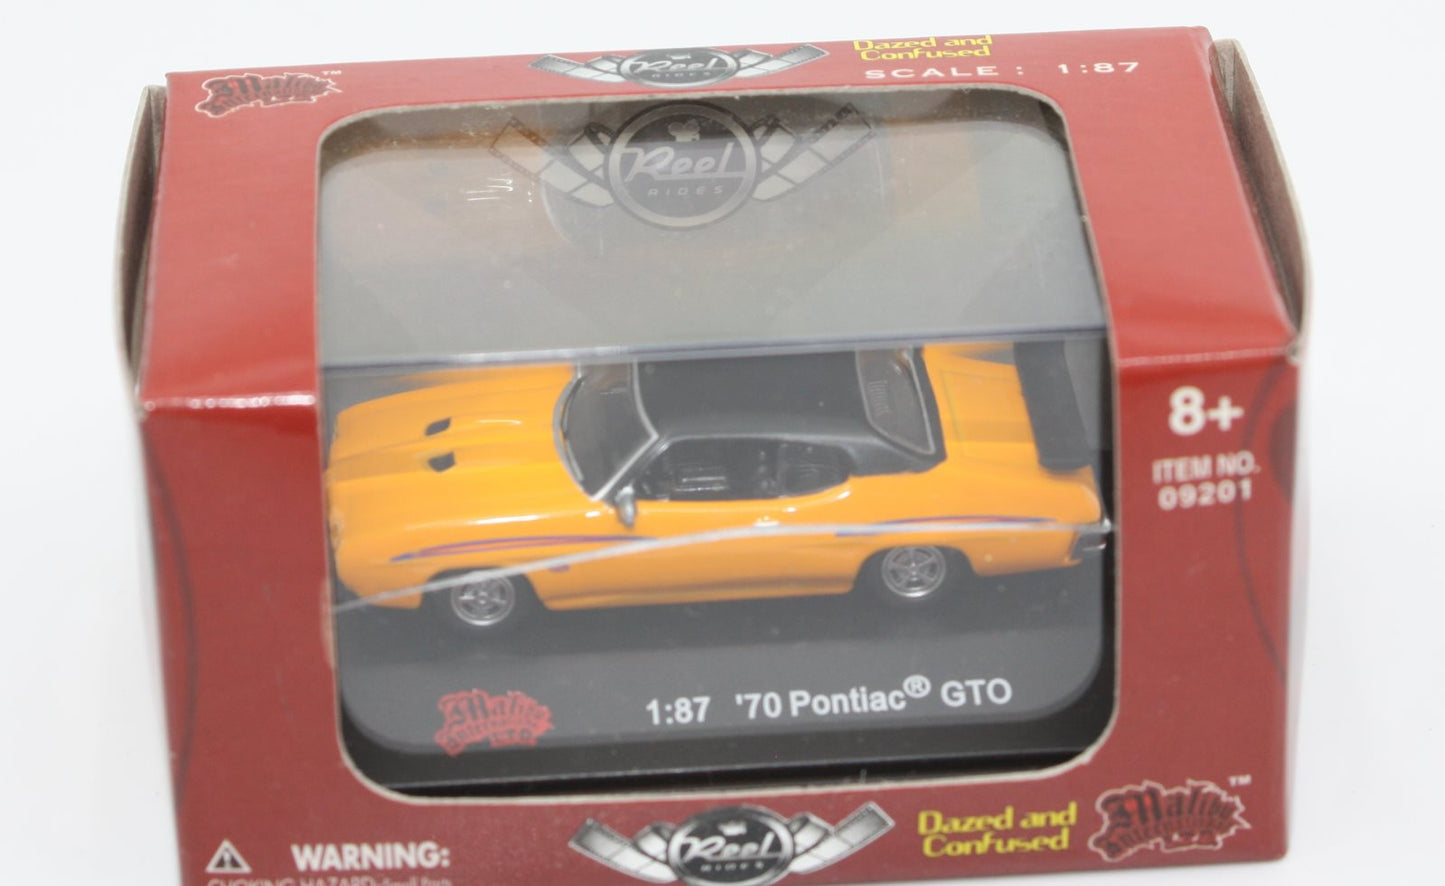 Malibu International 09201 1:87 Yellow Dazed & Confused '70 Pontiac GTO